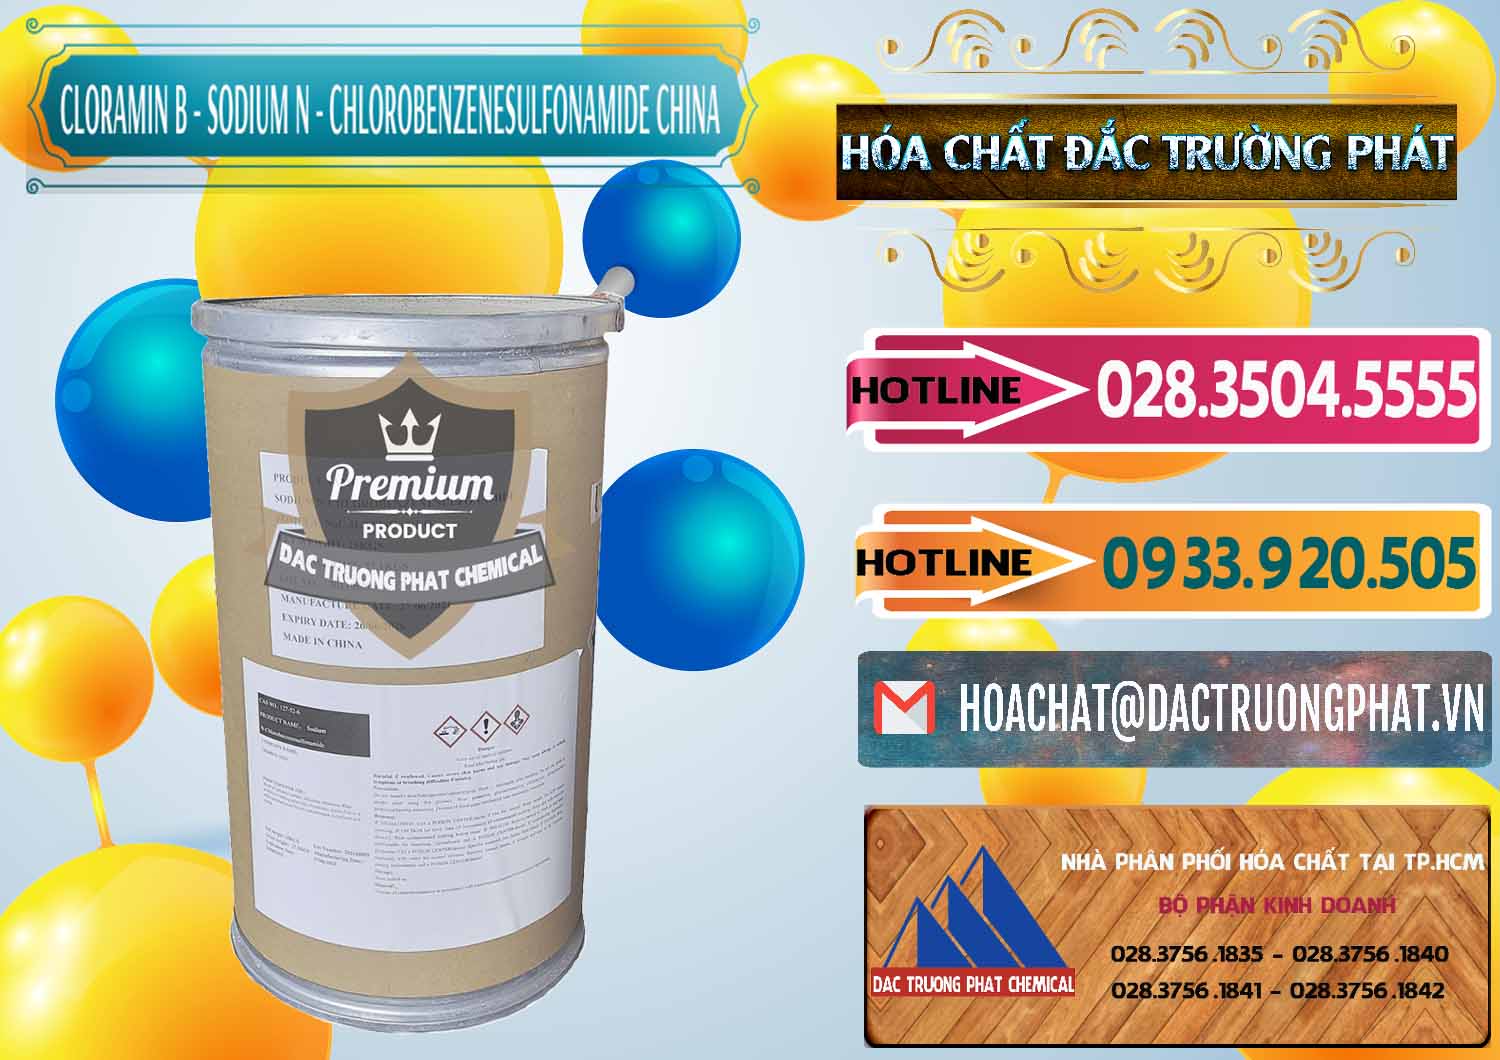 Nơi chuyên bán ( phân phối ) Cloramin B Khử Trùng, Diệt Khuẩn Trung Quốc China - 0298 - Công ty cung cấp ( bán ) hóa chất tại TP.HCM - dactruongphat.vn